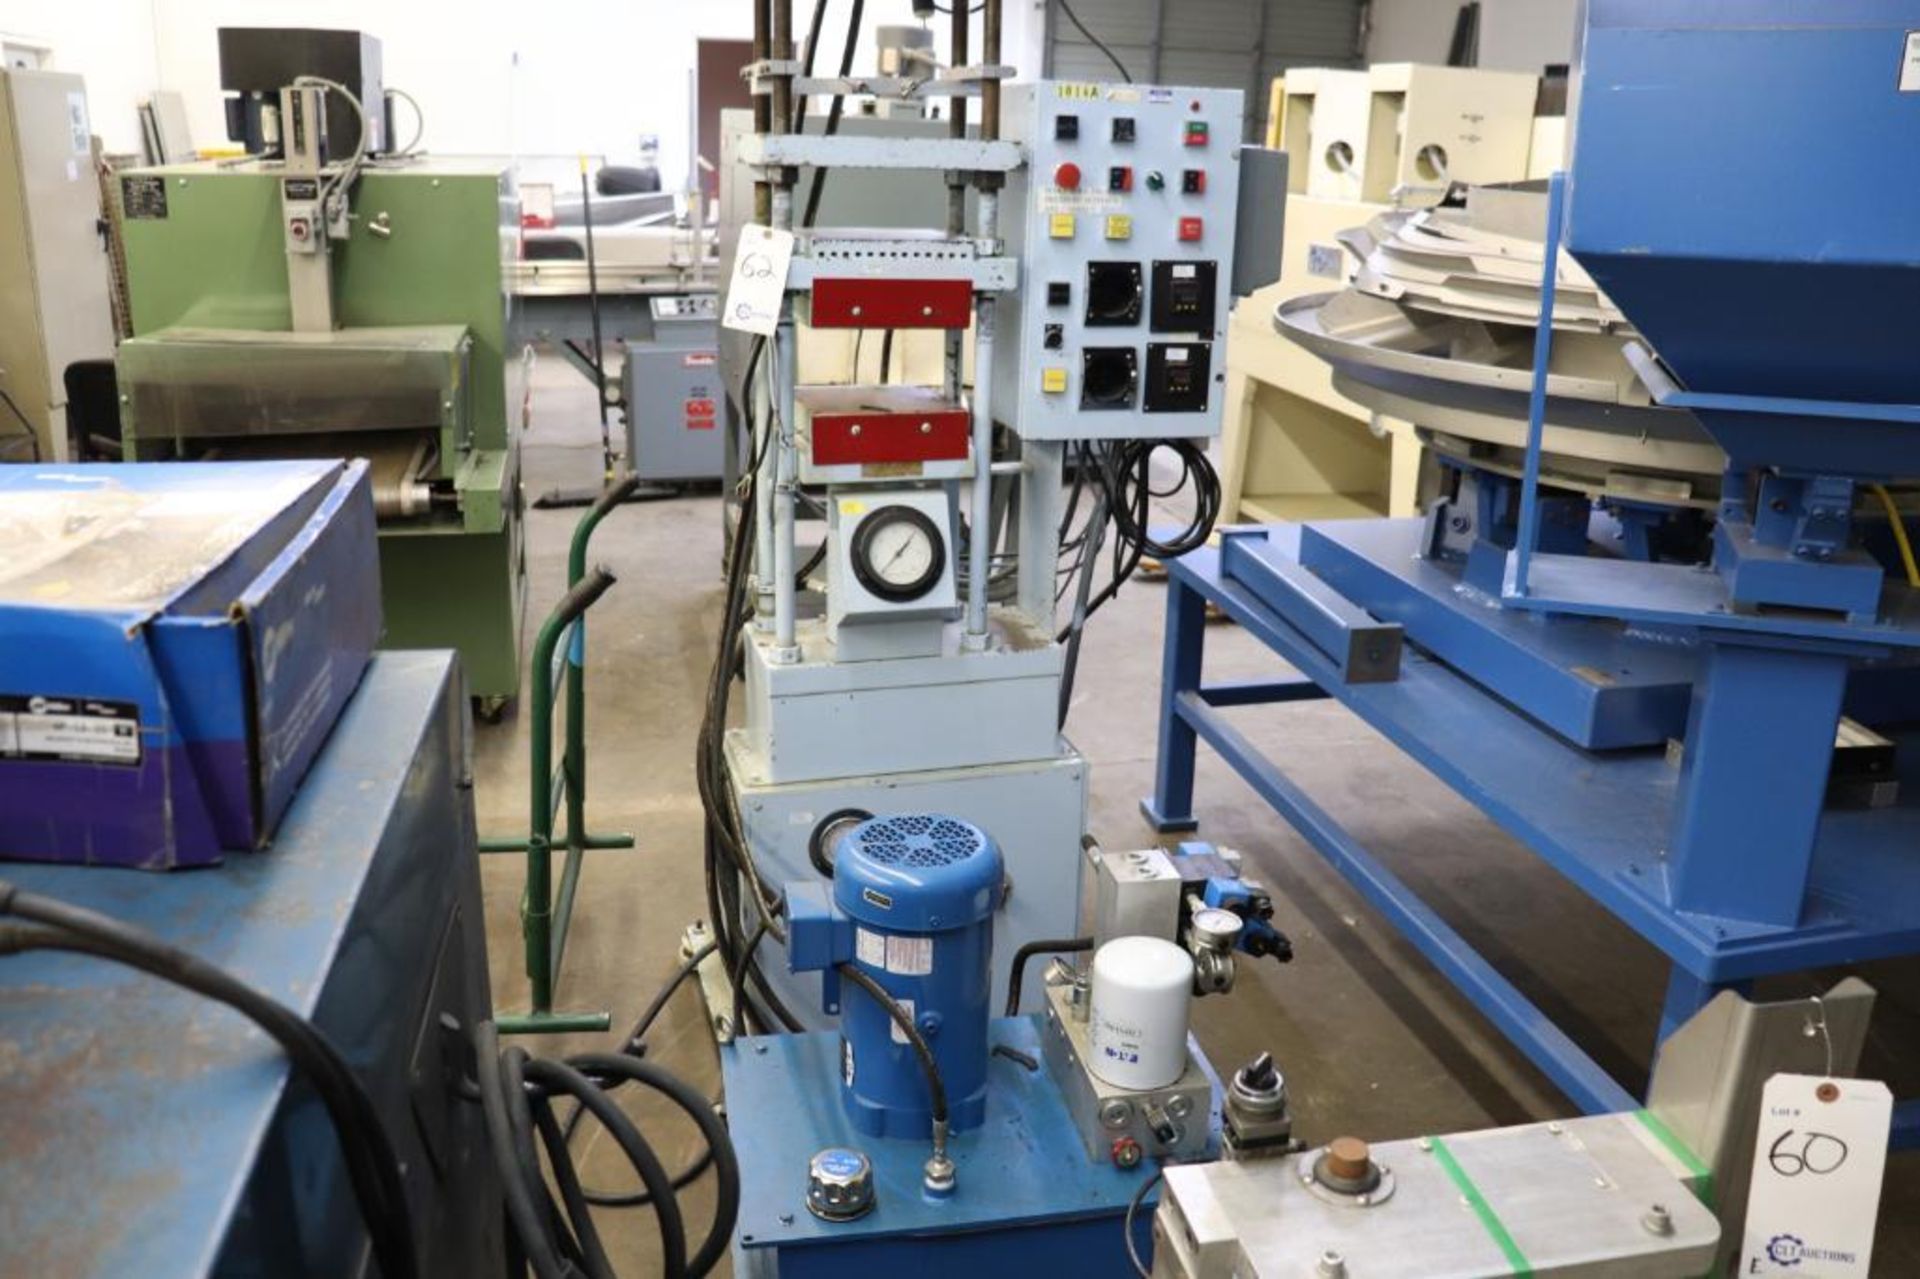 Heated hydraulic press